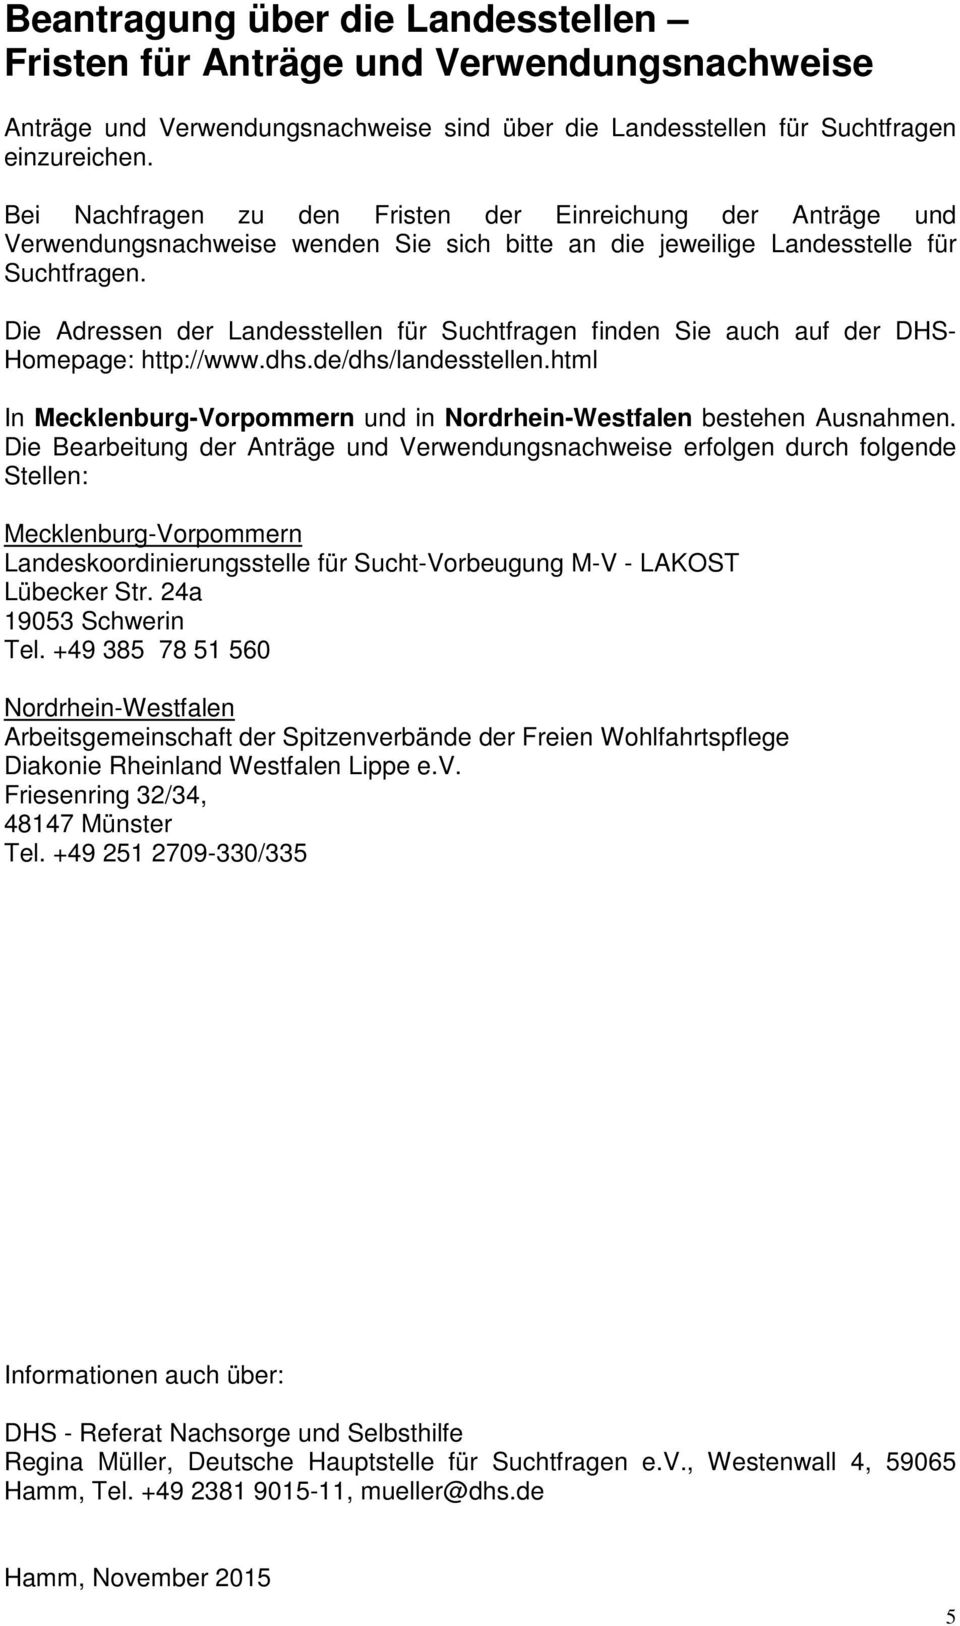 Die Adressen der Landesstellen für Suchtfragen finden Sie auch auf der DHS- Homepage: http://www.dhs.de/dhs/landesstellen.html In Mecklenburg-Vorpommern und in Nordrhein-Westfalen bestehen Ausnahmen.